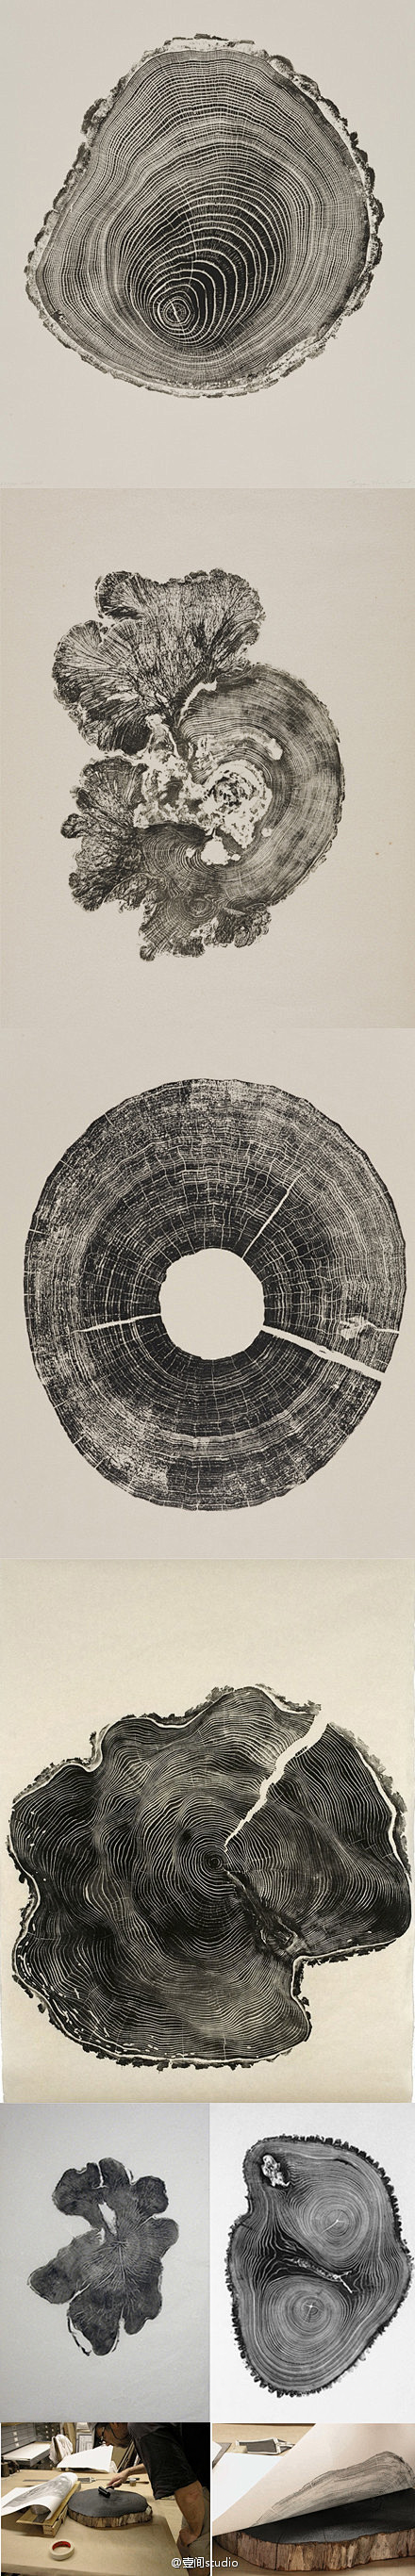 [【艺术创意】木的时光切片] 英国艺术家...